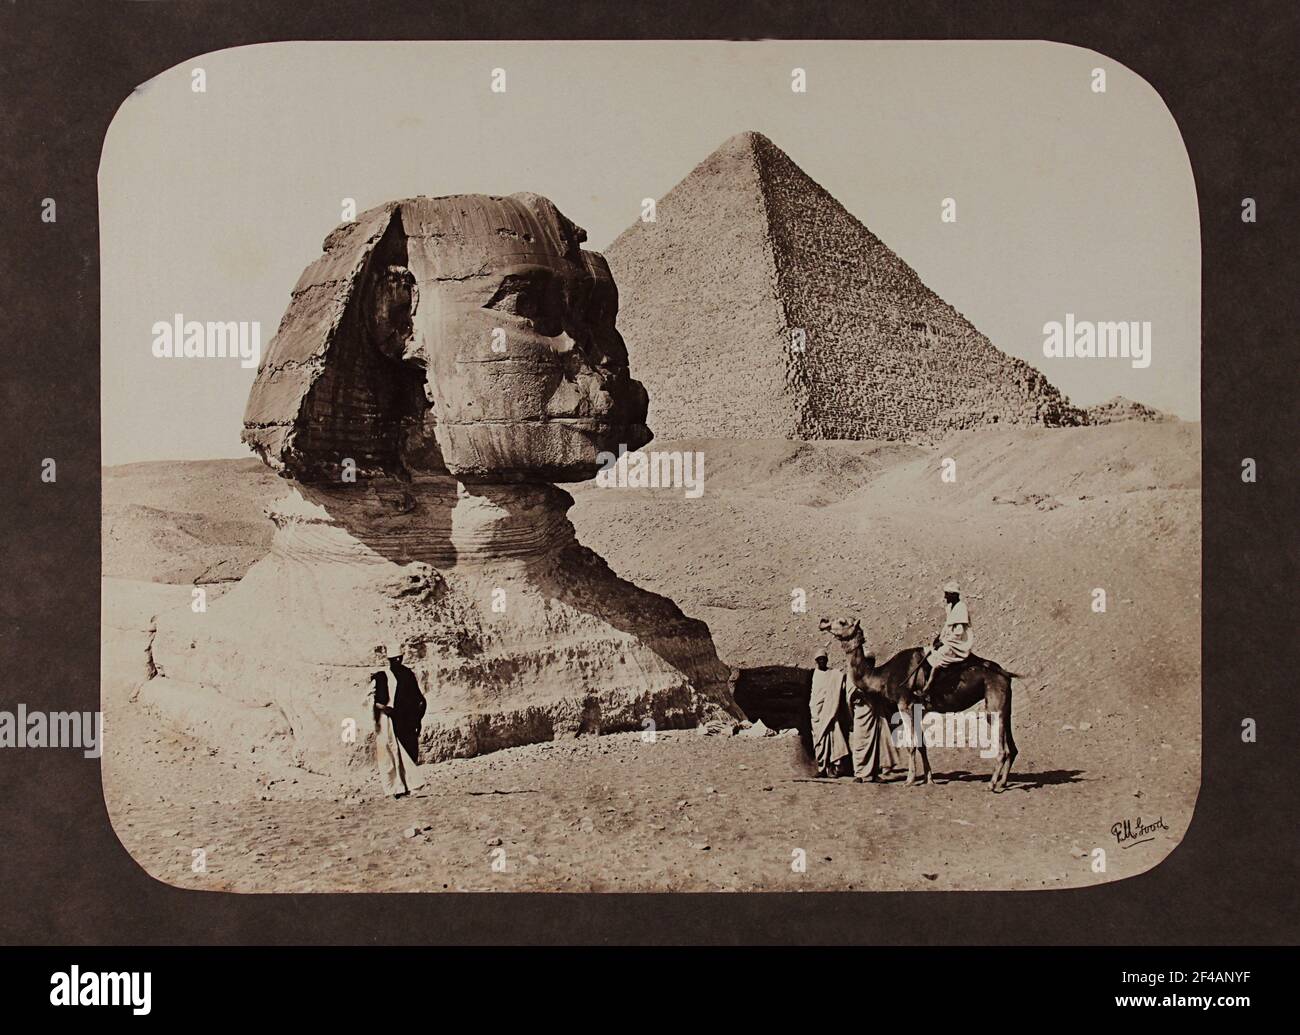 Die Sphinx in Giza mit der Großen Pyramide, fotografiert um 1870 in Ägypten von Frank Mason Wood, im Auftrag von Francis Friths Fotofirma. Stockfoto